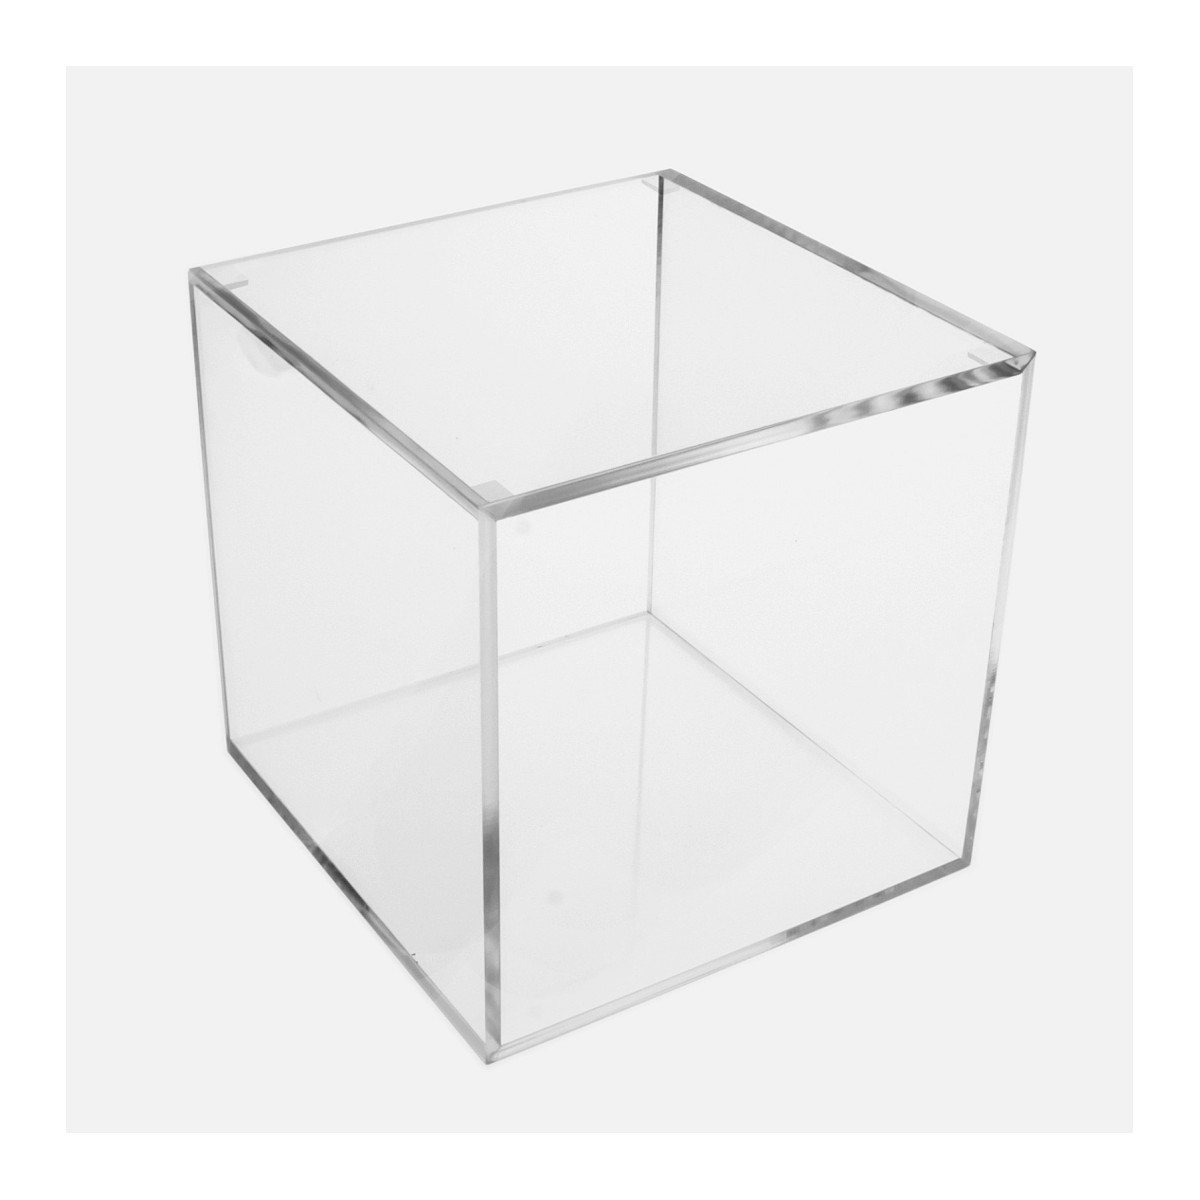 Cubo 5 Lati Chiusi + Coperchio Appoggiato in plexiglass